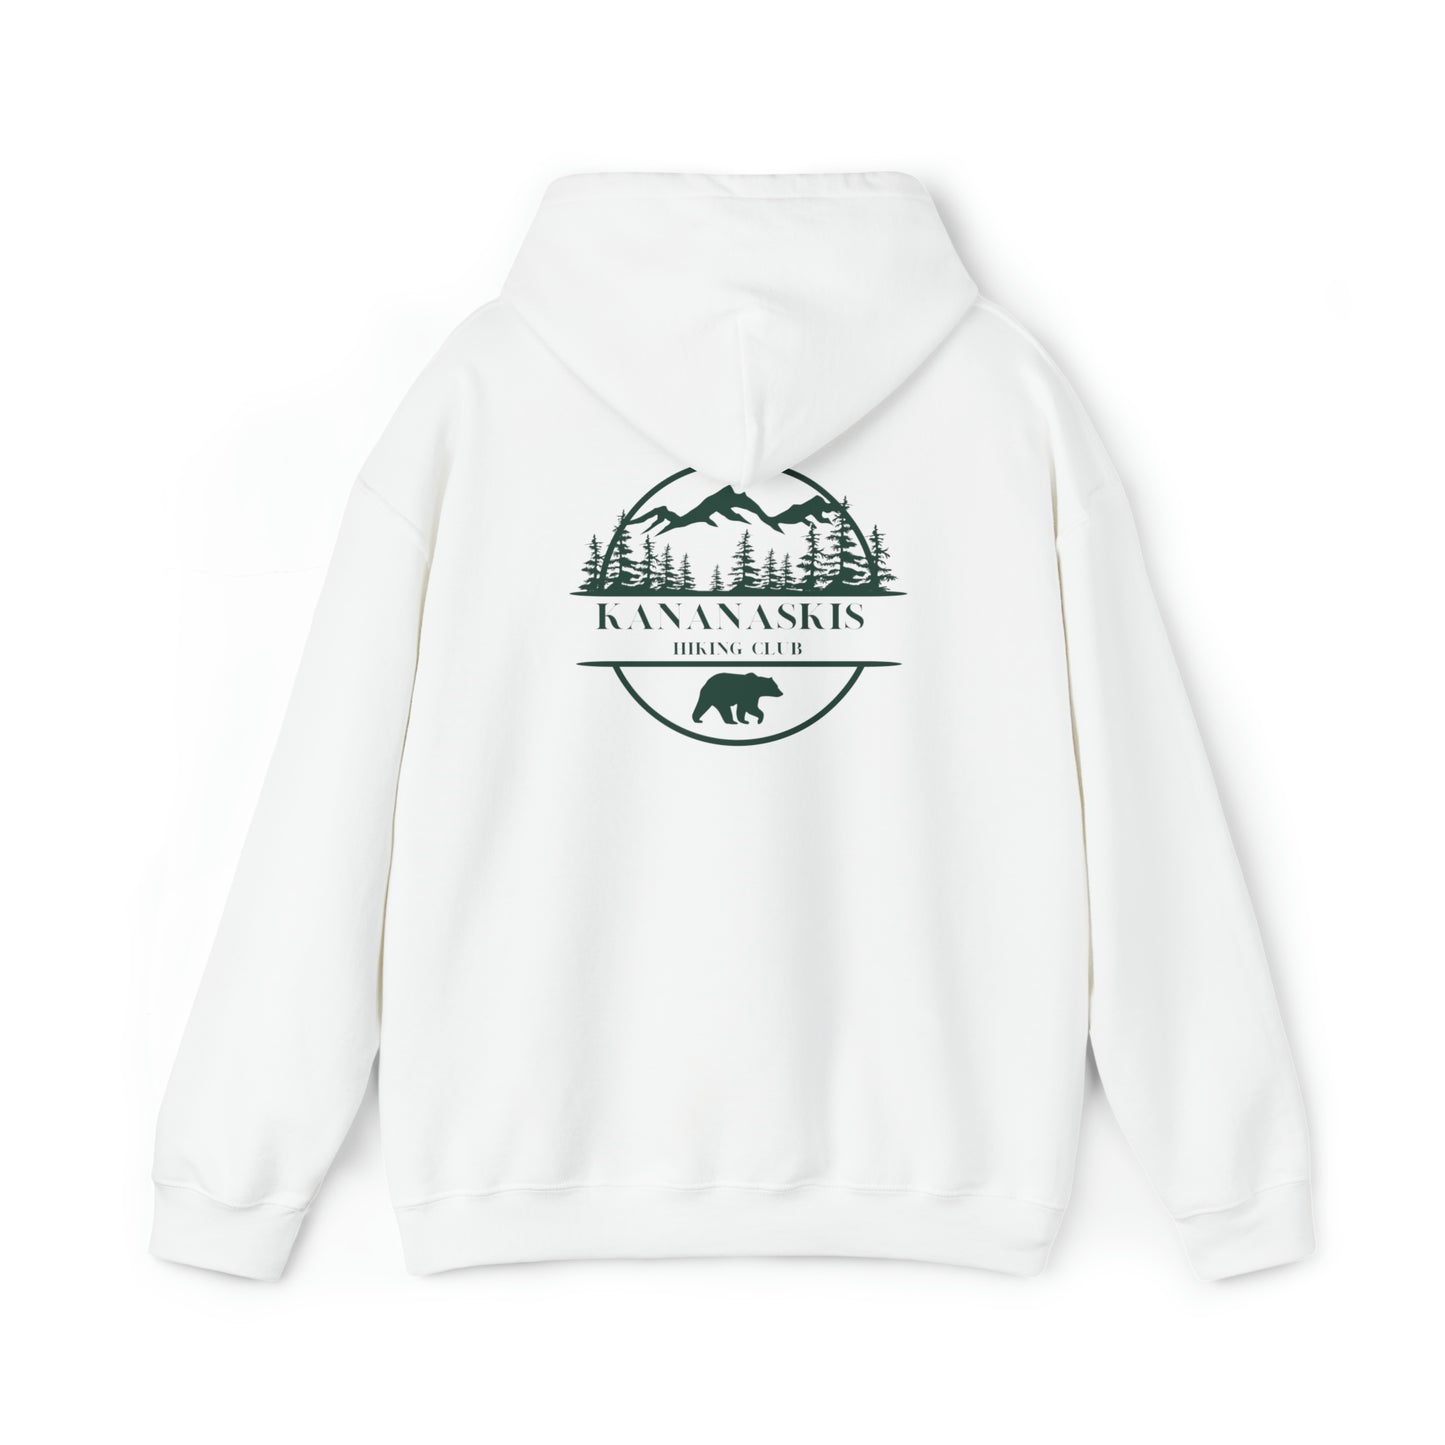 Kananaskis Hiking Club - Unisex Heavy Blend™ Hooded Sweatshirt